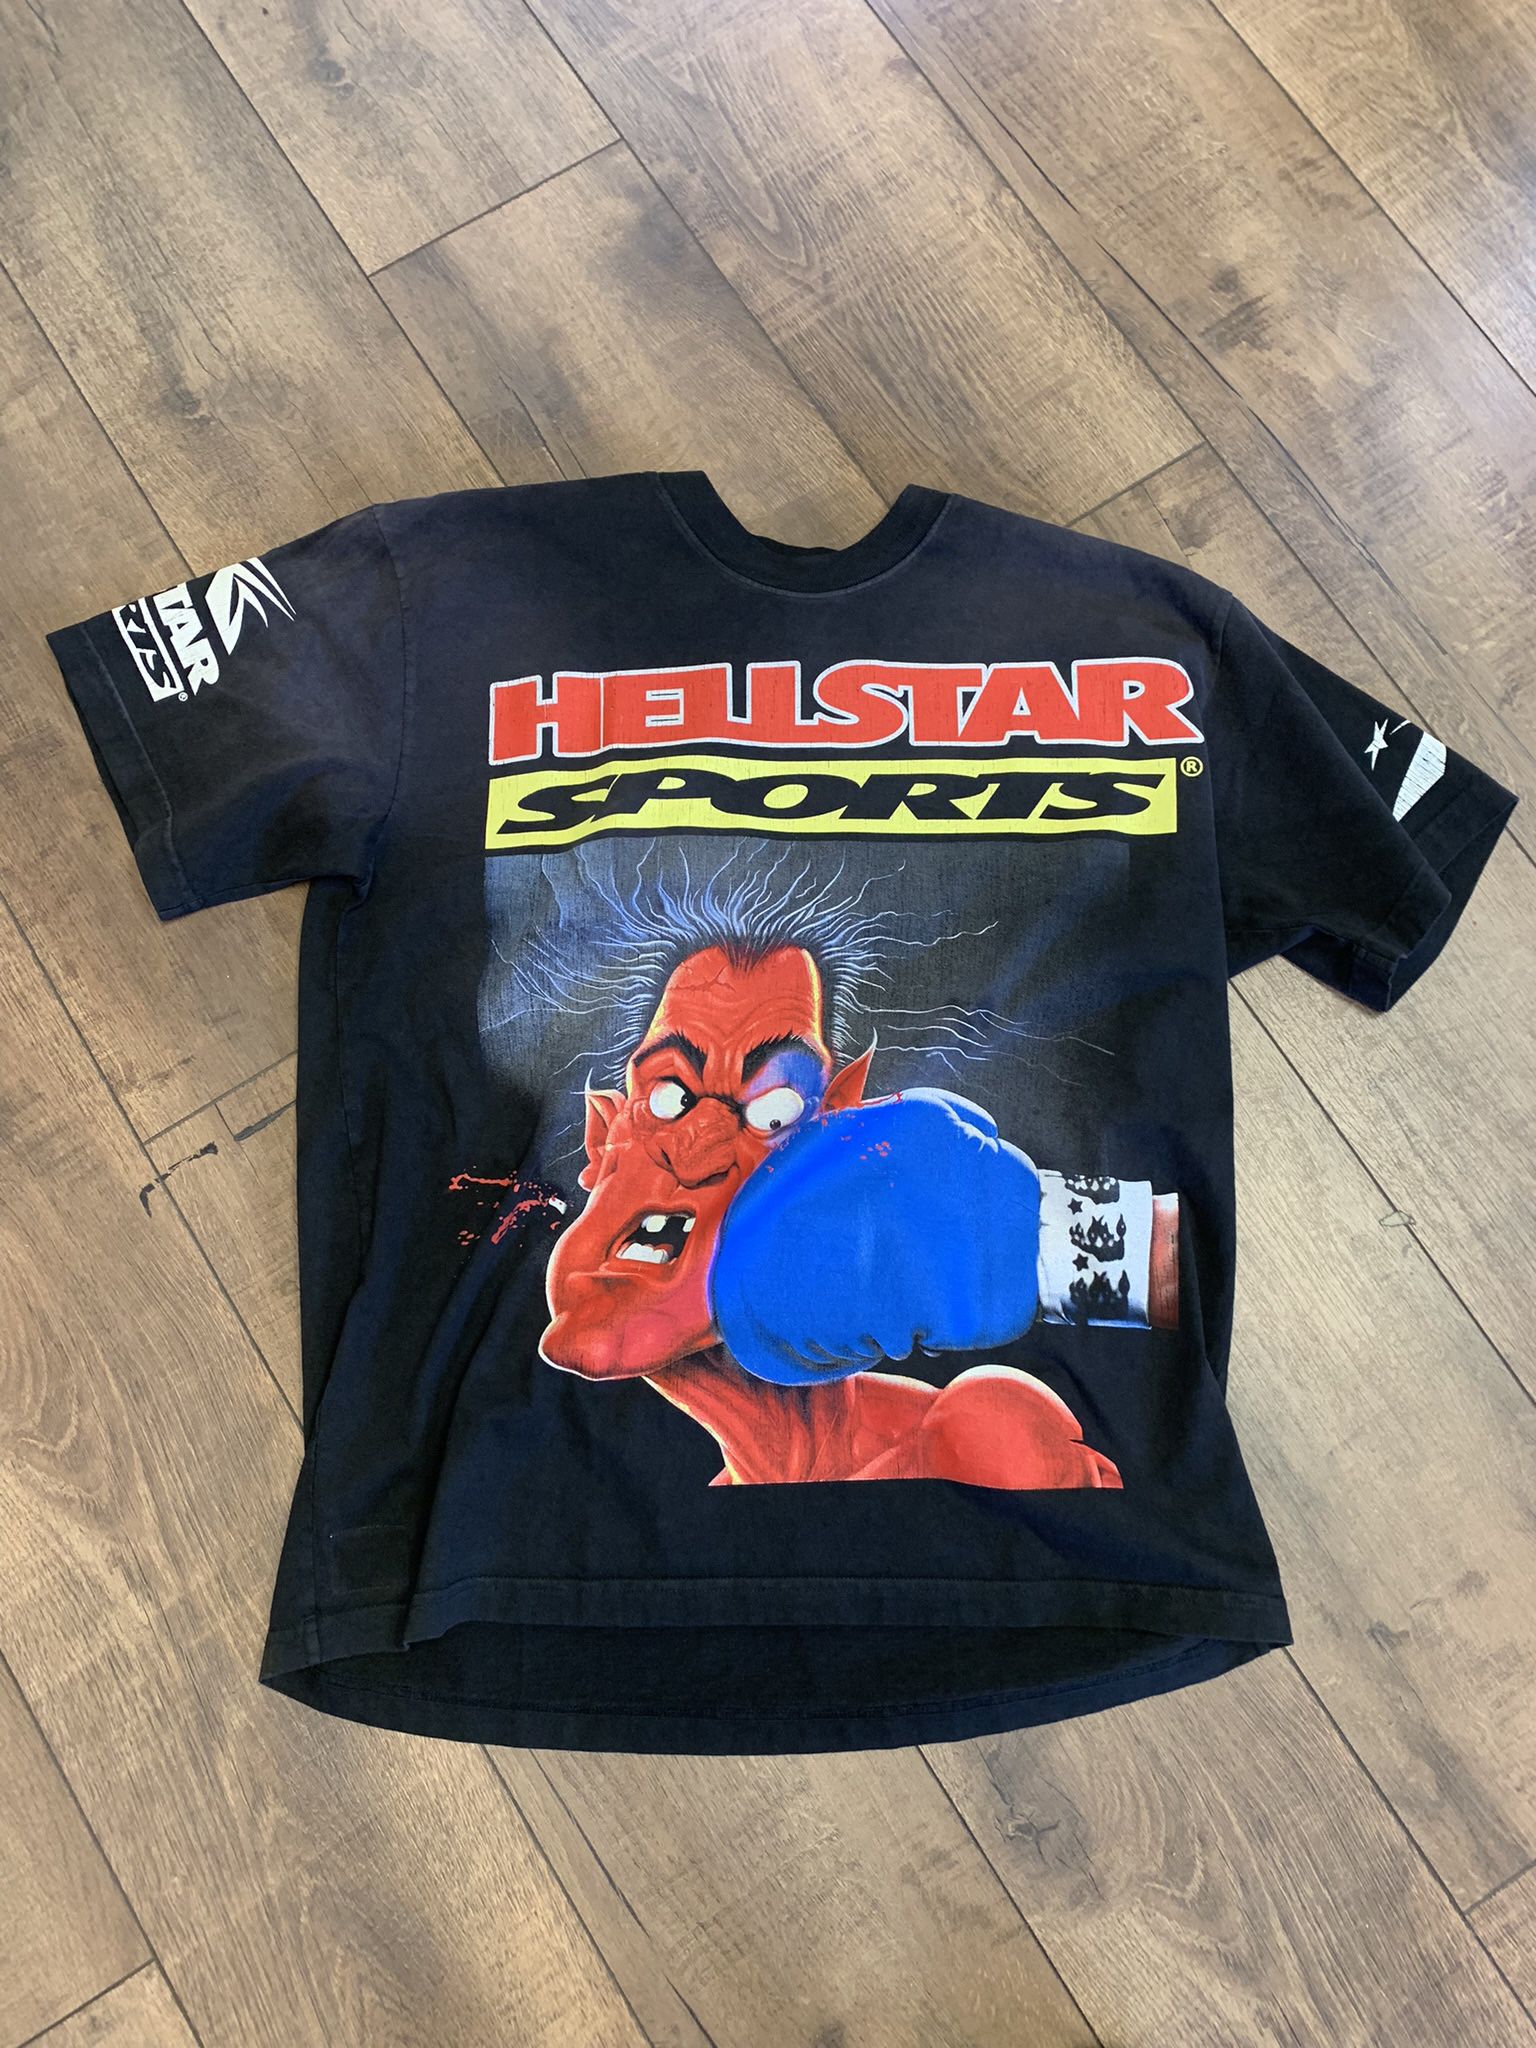 Hellstar Bigger Than Satan T-Shirt - Size Large